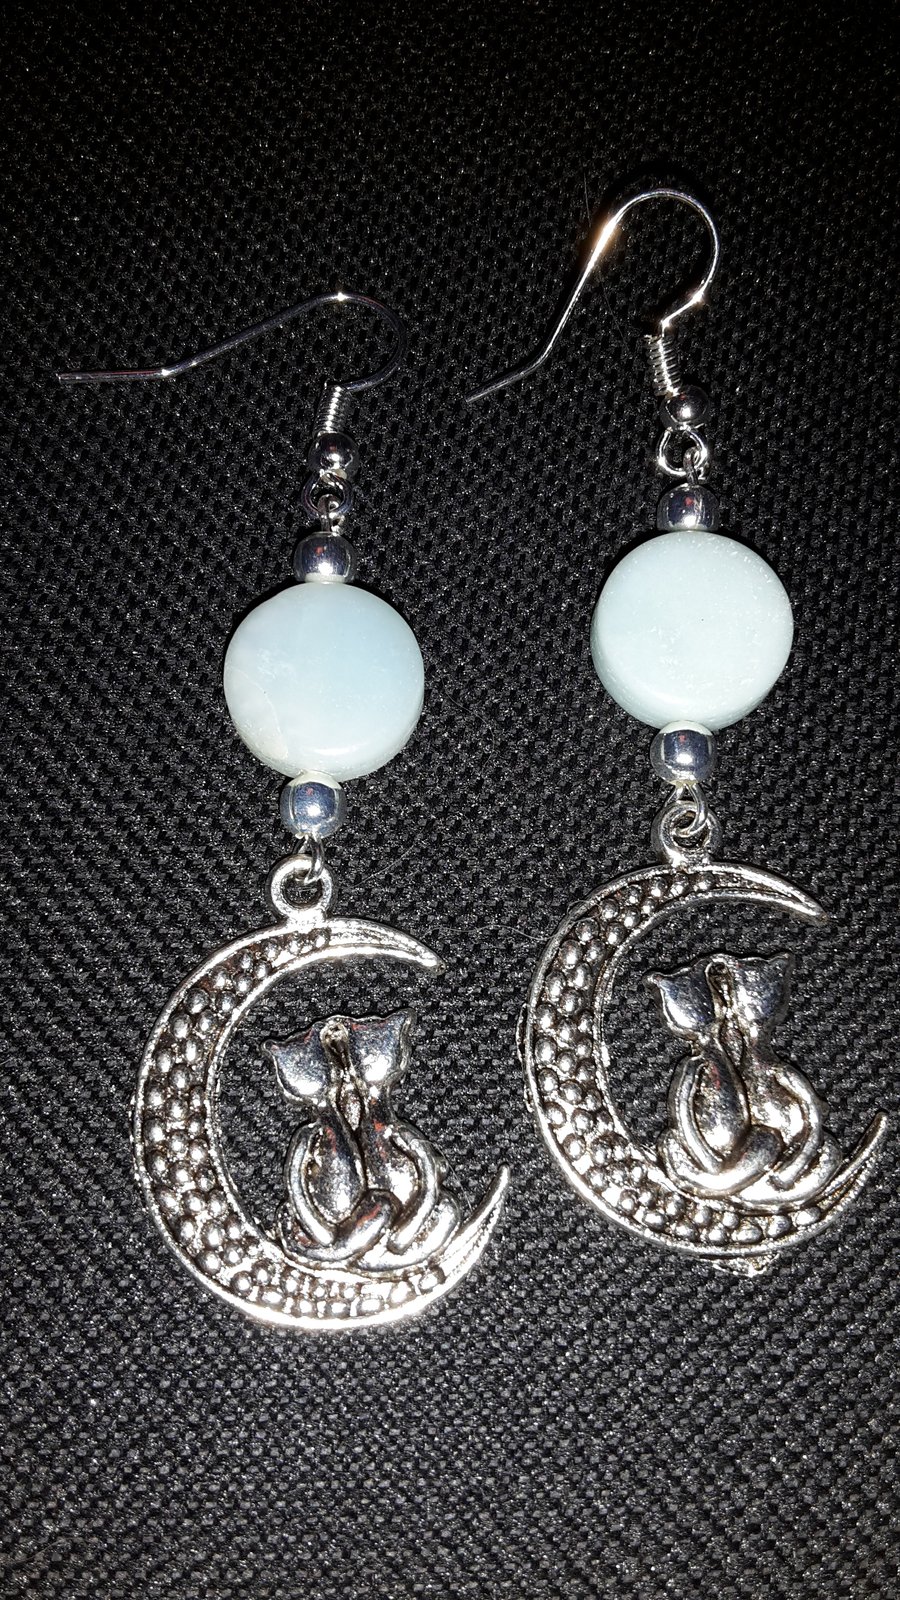 Cat moon earrings